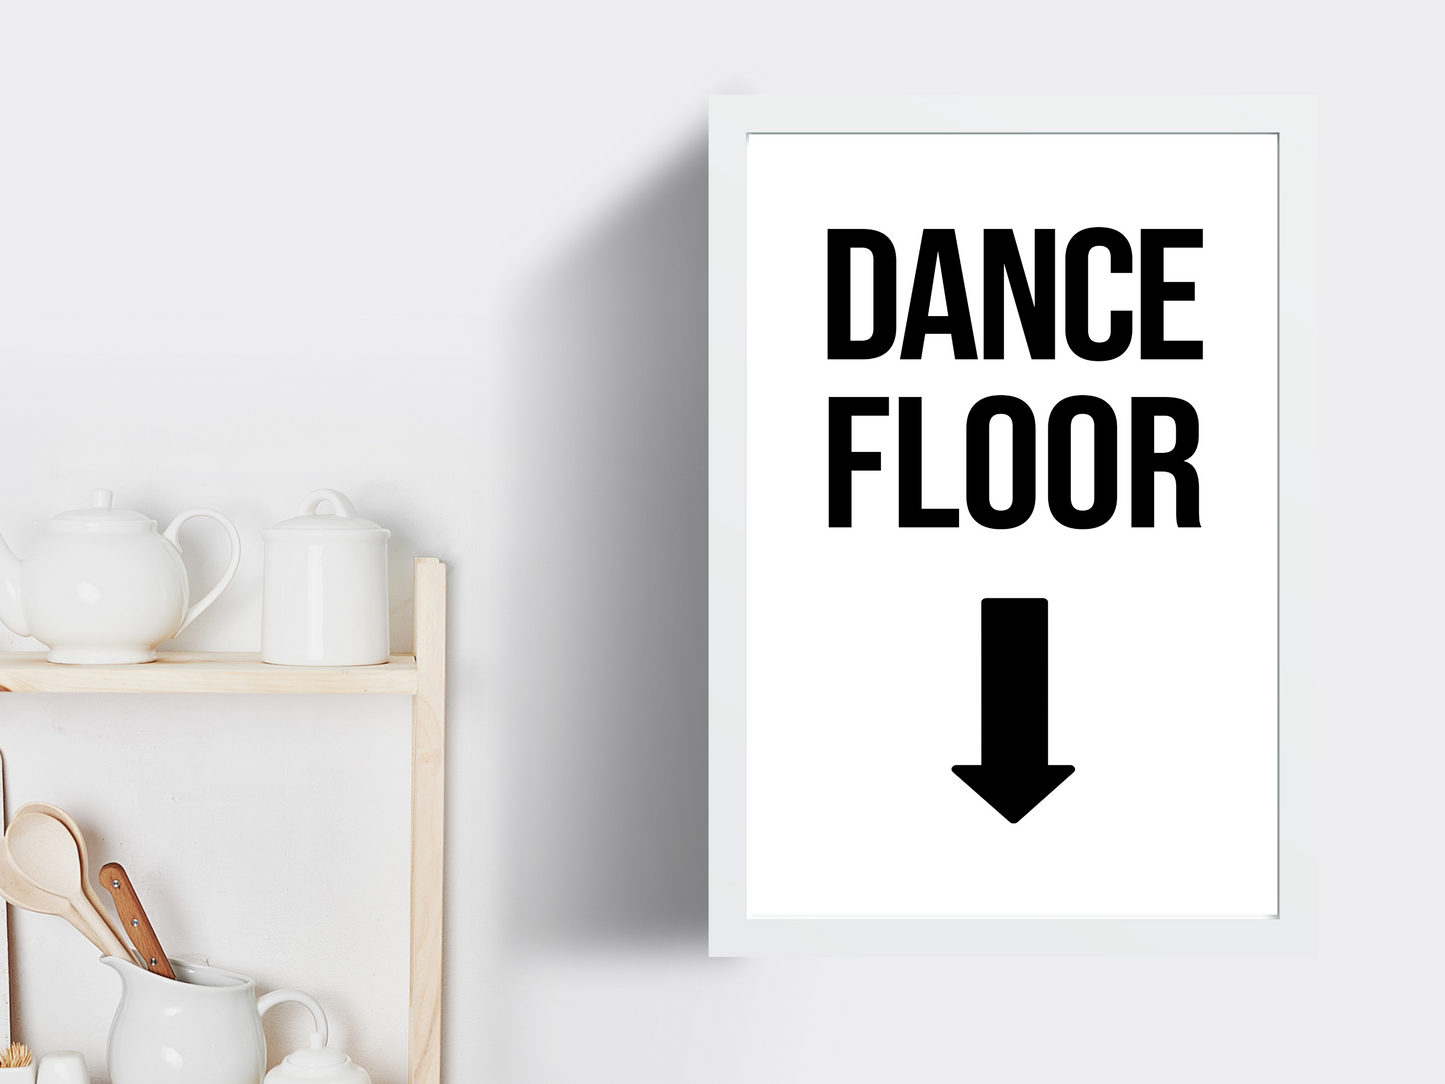 Dance Floor (Down Arrow)